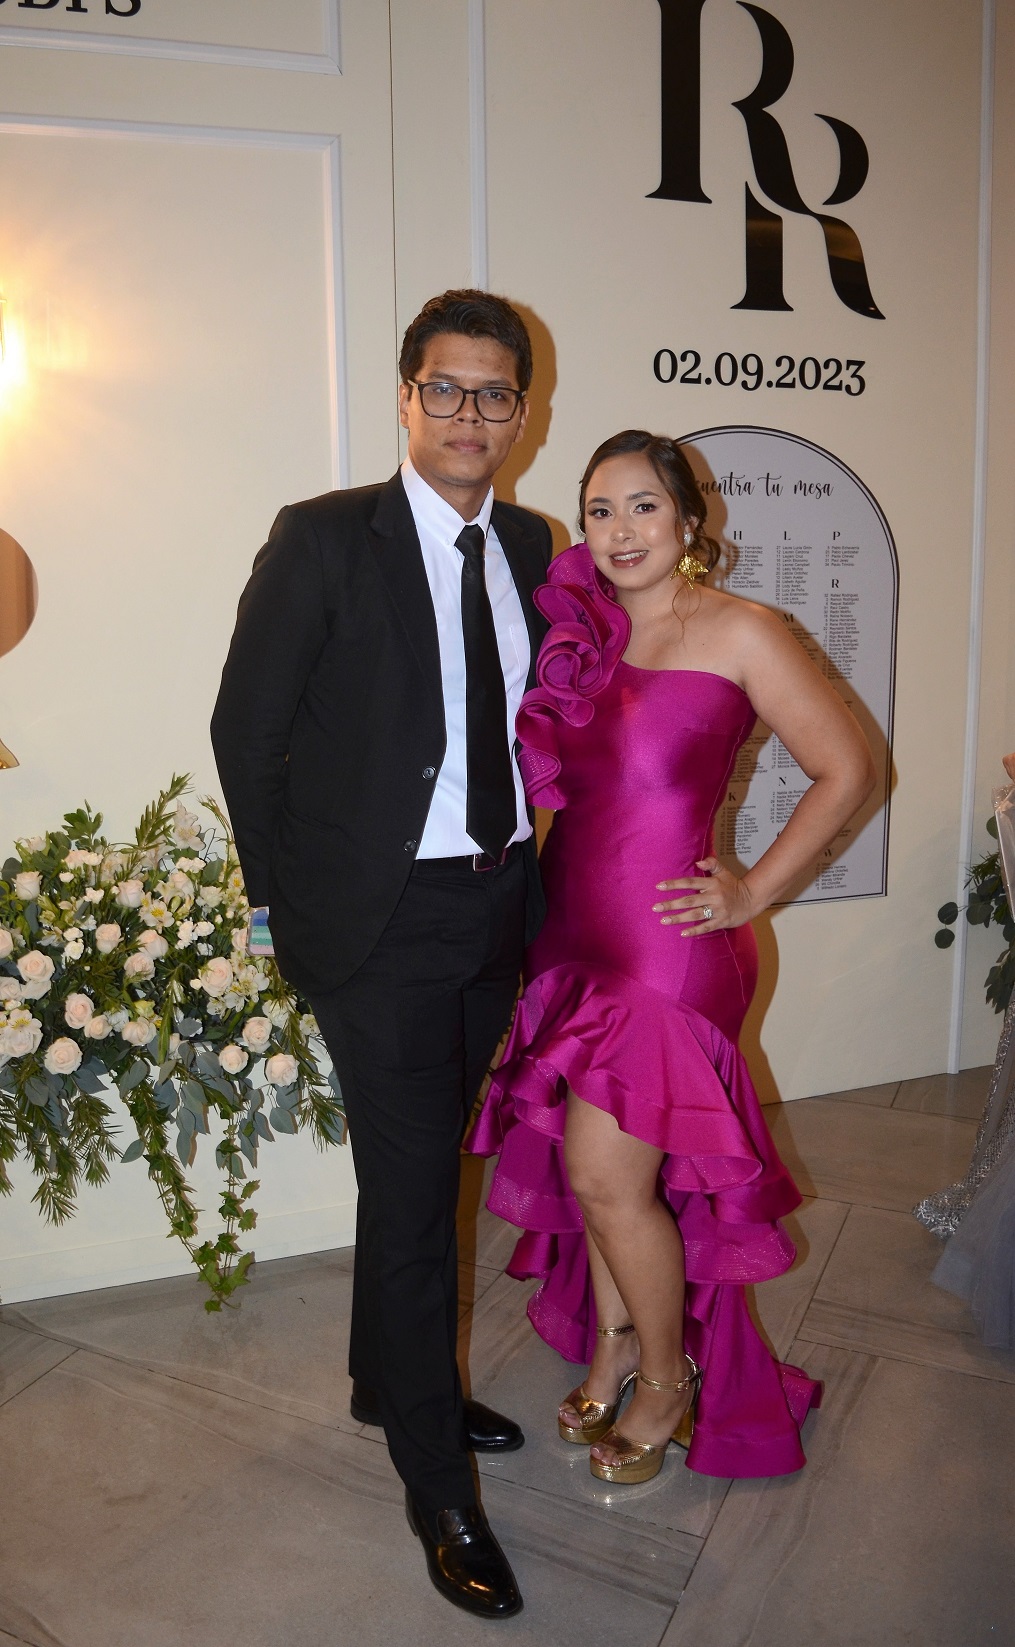 Múltiples felicitaciones para los nuevos esposos Rigoberto Bardales y Ruby Rodríguez 